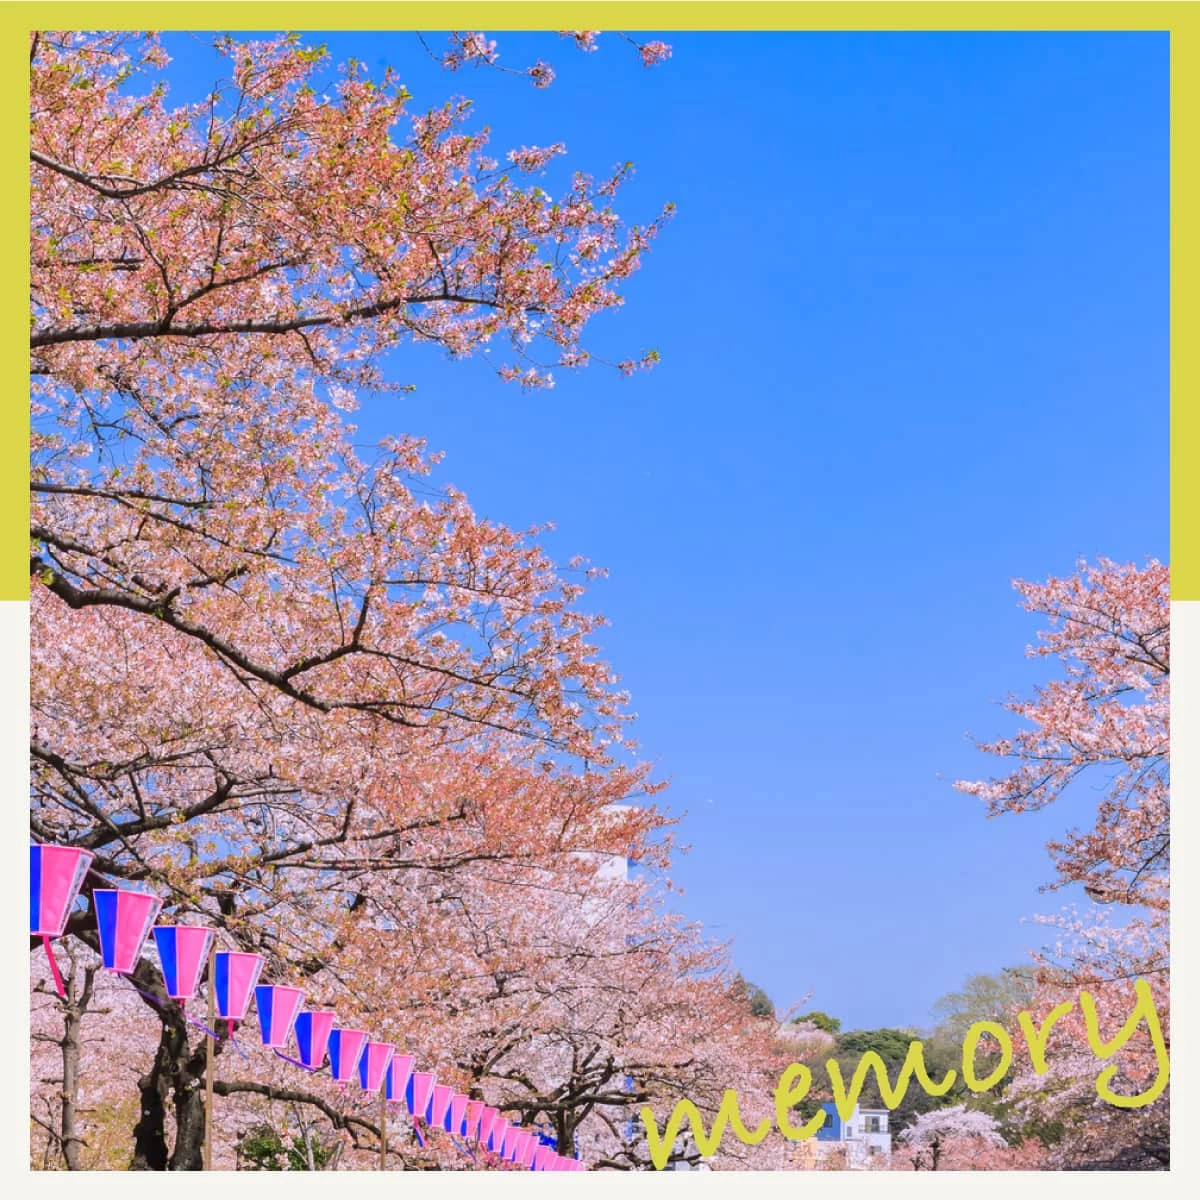 東京・文京区で桜巡り♪東洋文庫ミュージアムや天然温泉も満喫